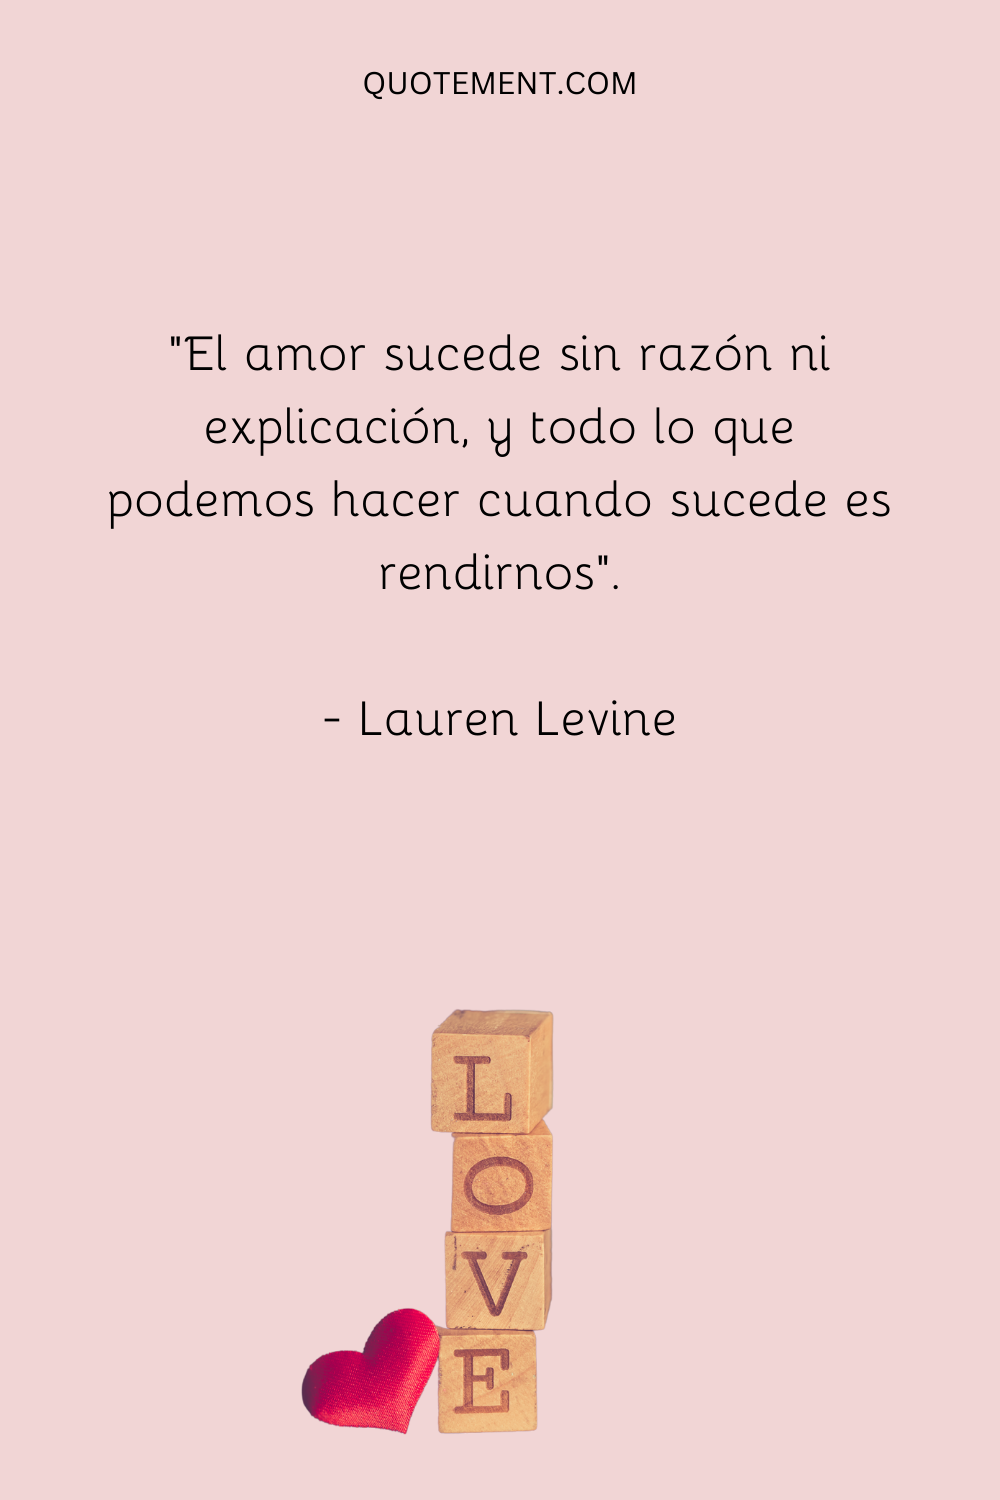 "El amor sucede sin razón ni explicación, y todo lo que podemos hacer cuando sucede es rendirnos". - Lauren Levine